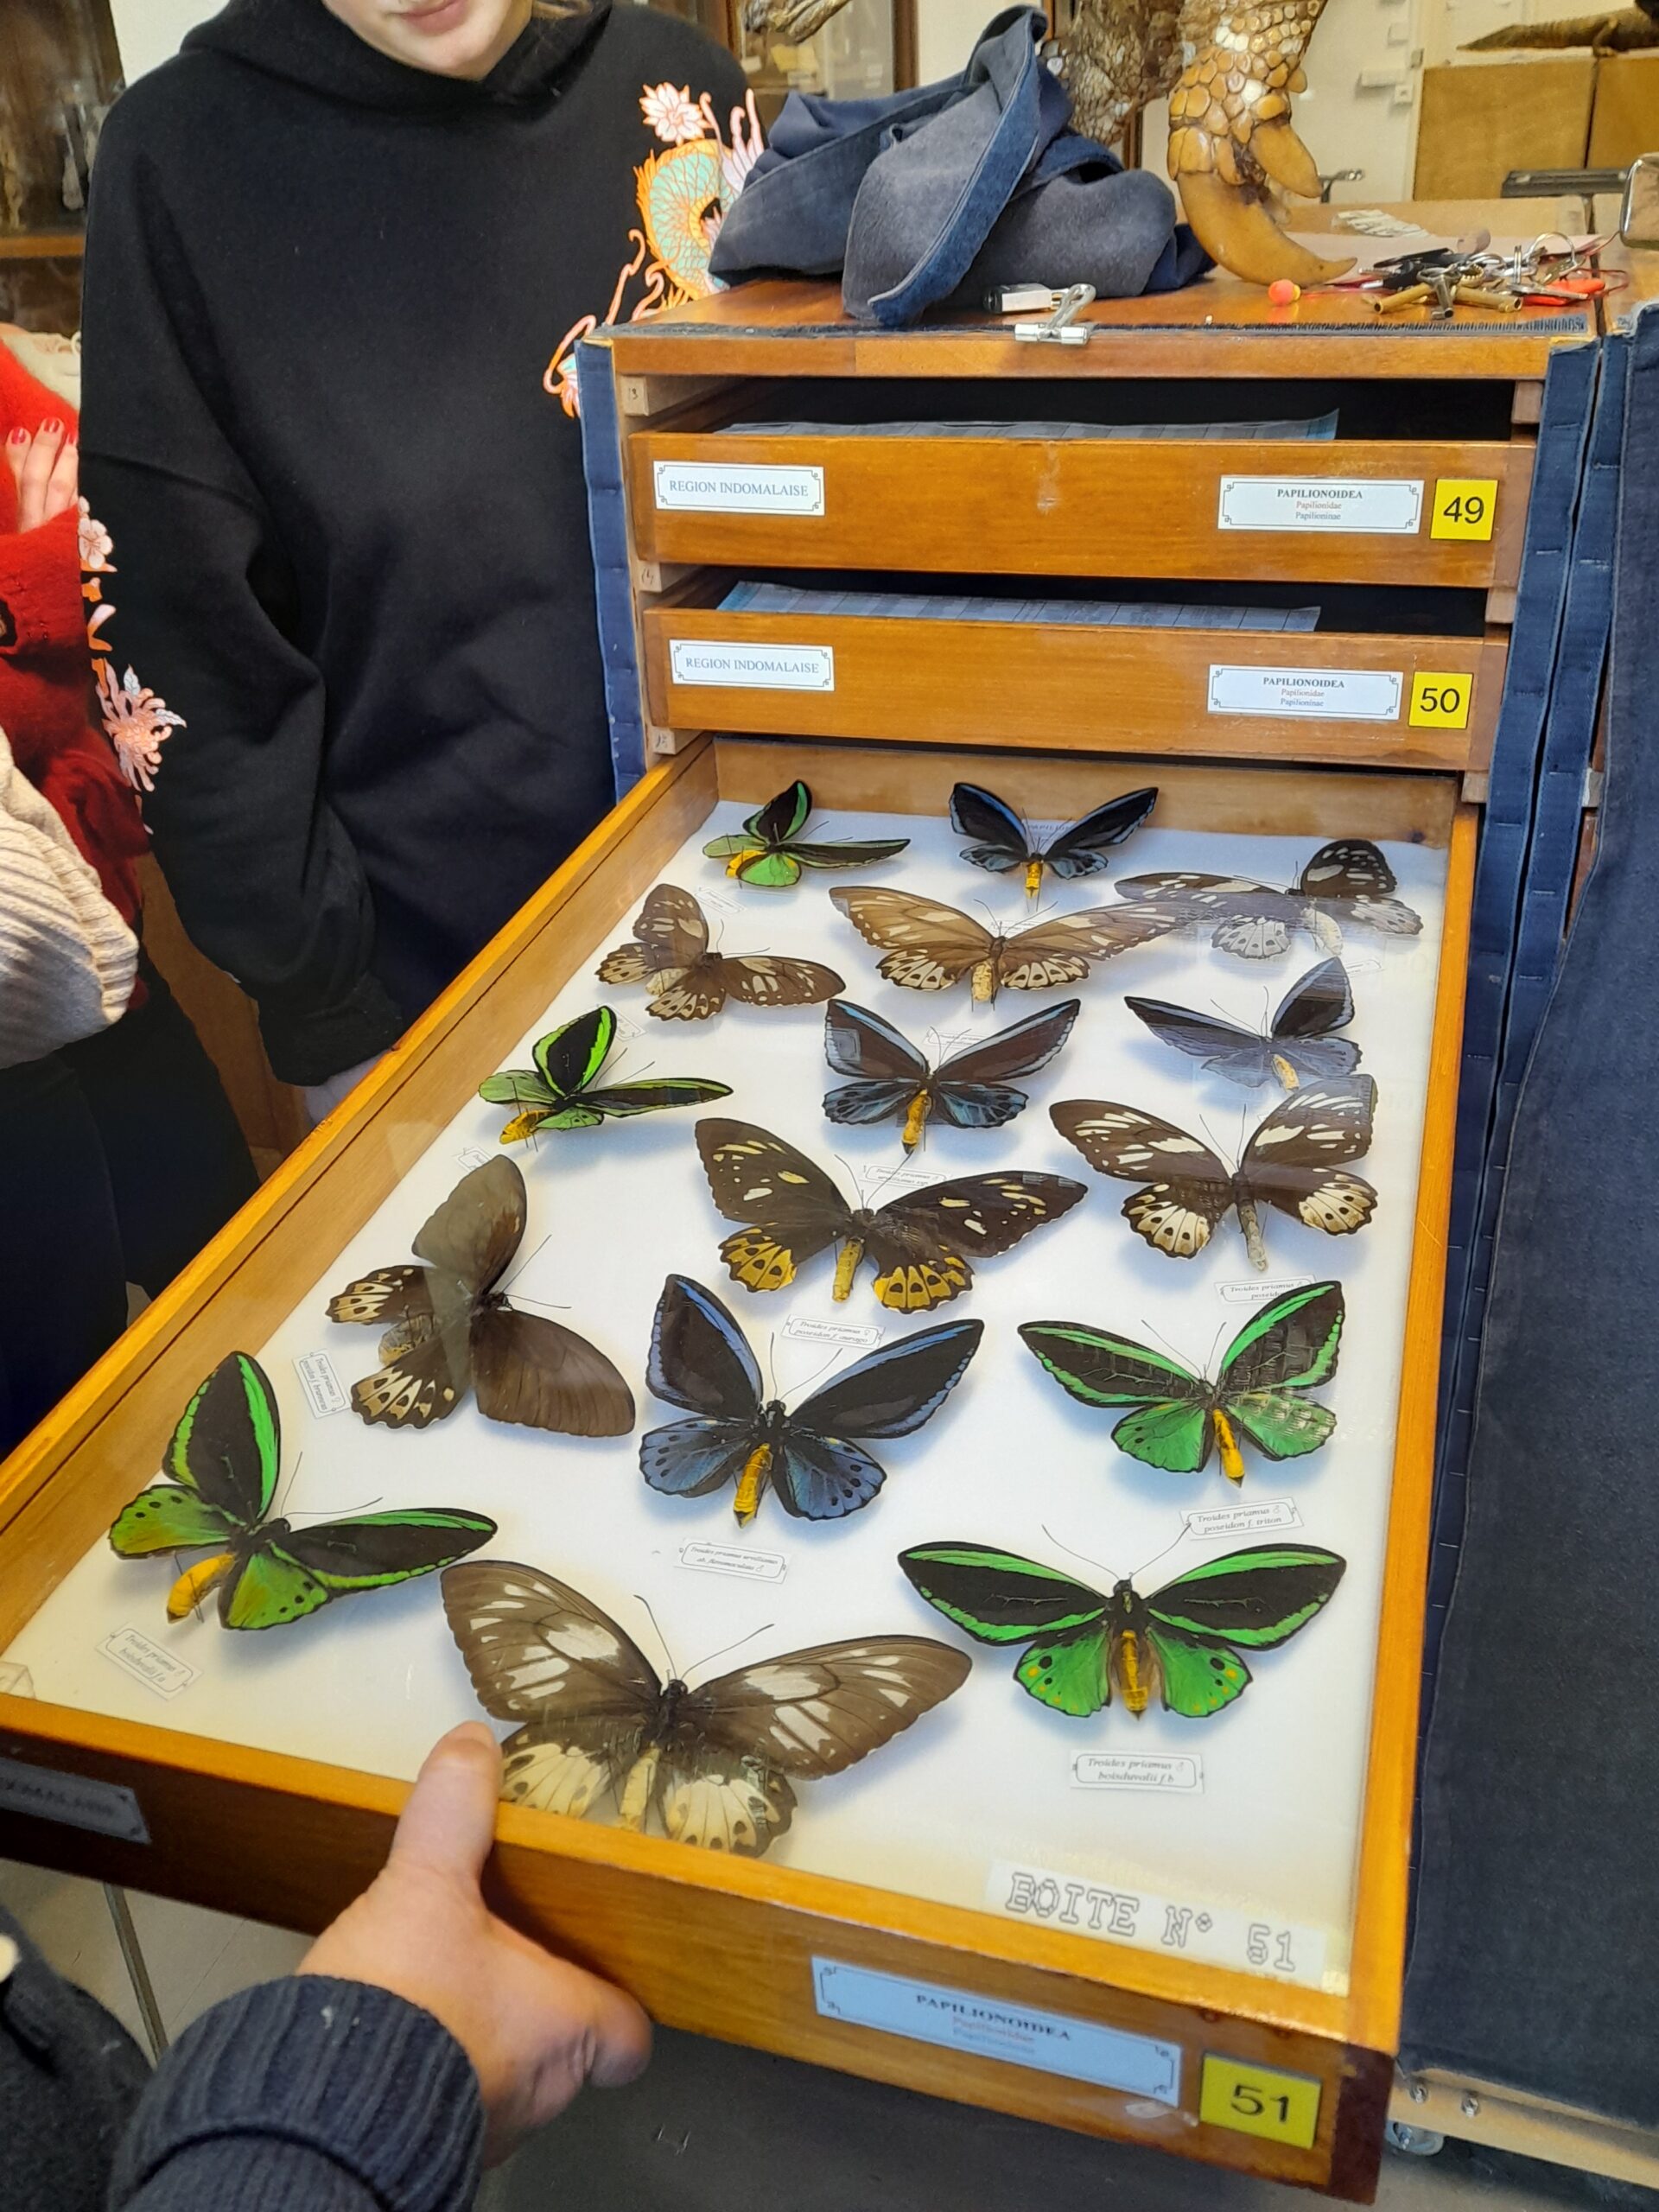 Spécimens épinglés de papillons dans un tiroir